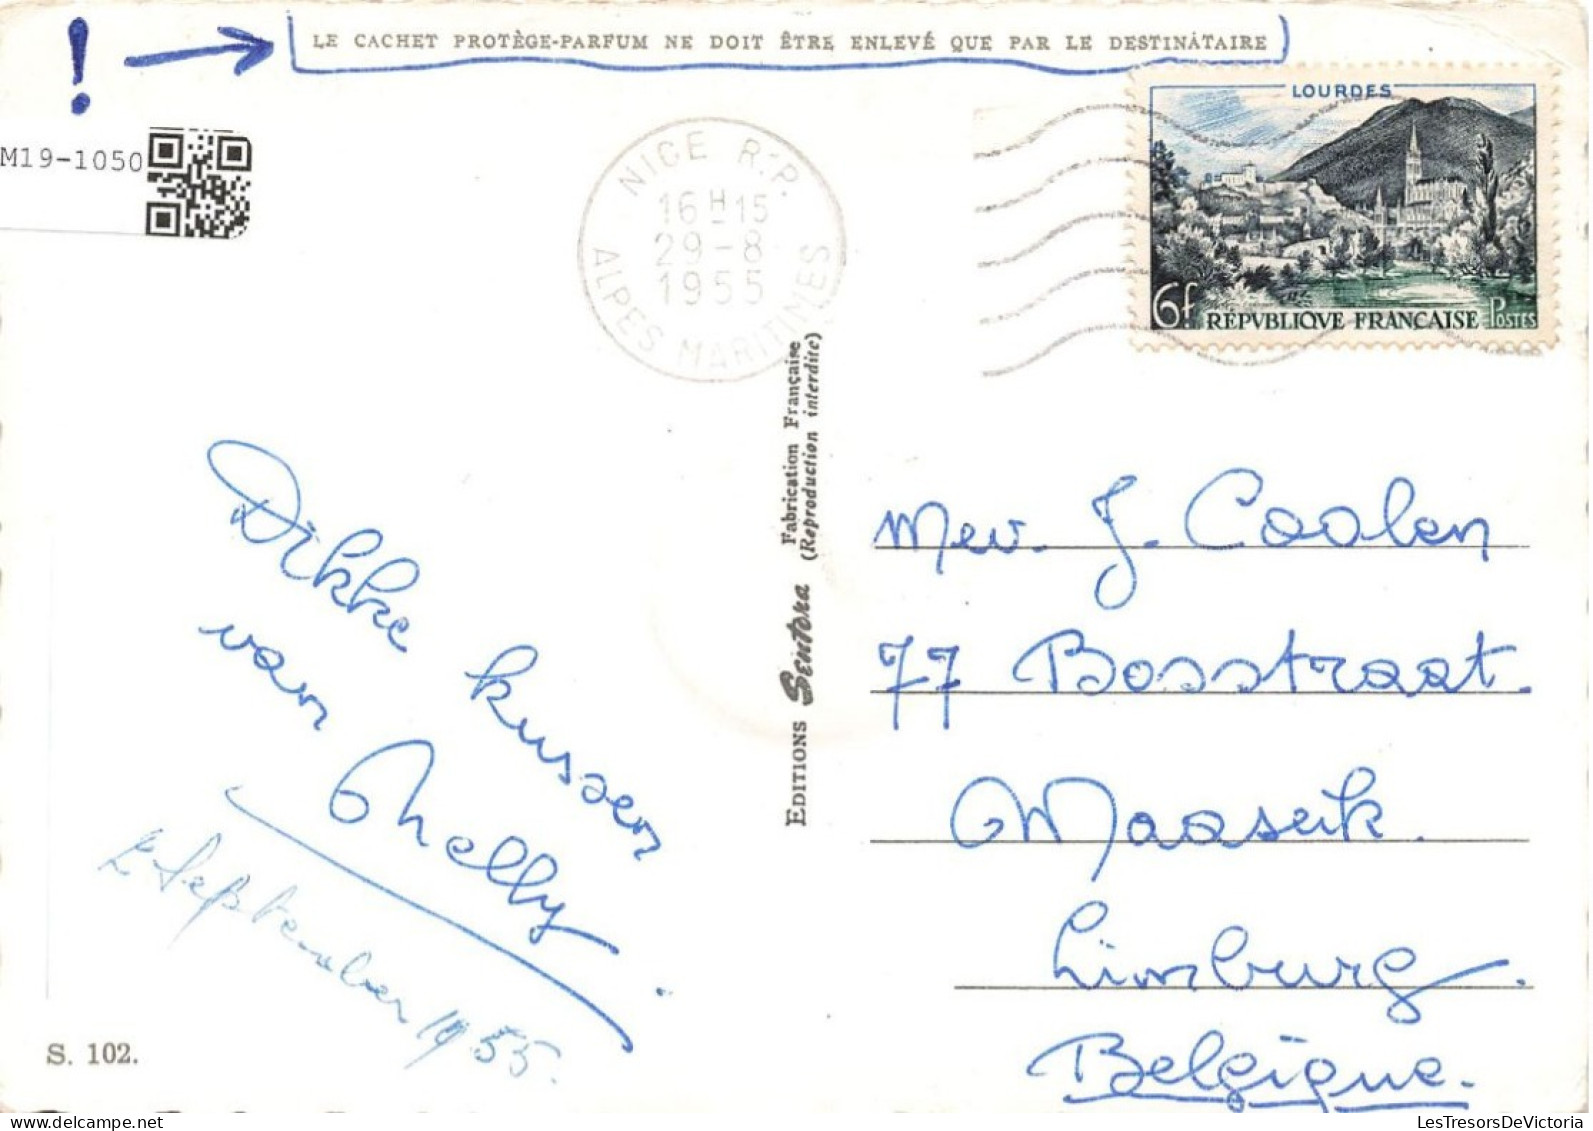 SOUVENIR DE LA CÔTE D'AZUR - Monte-Carlo - Monaco - Menton - Nice - Beaulieu - Colorisé - Carte Postale - Greetings From...